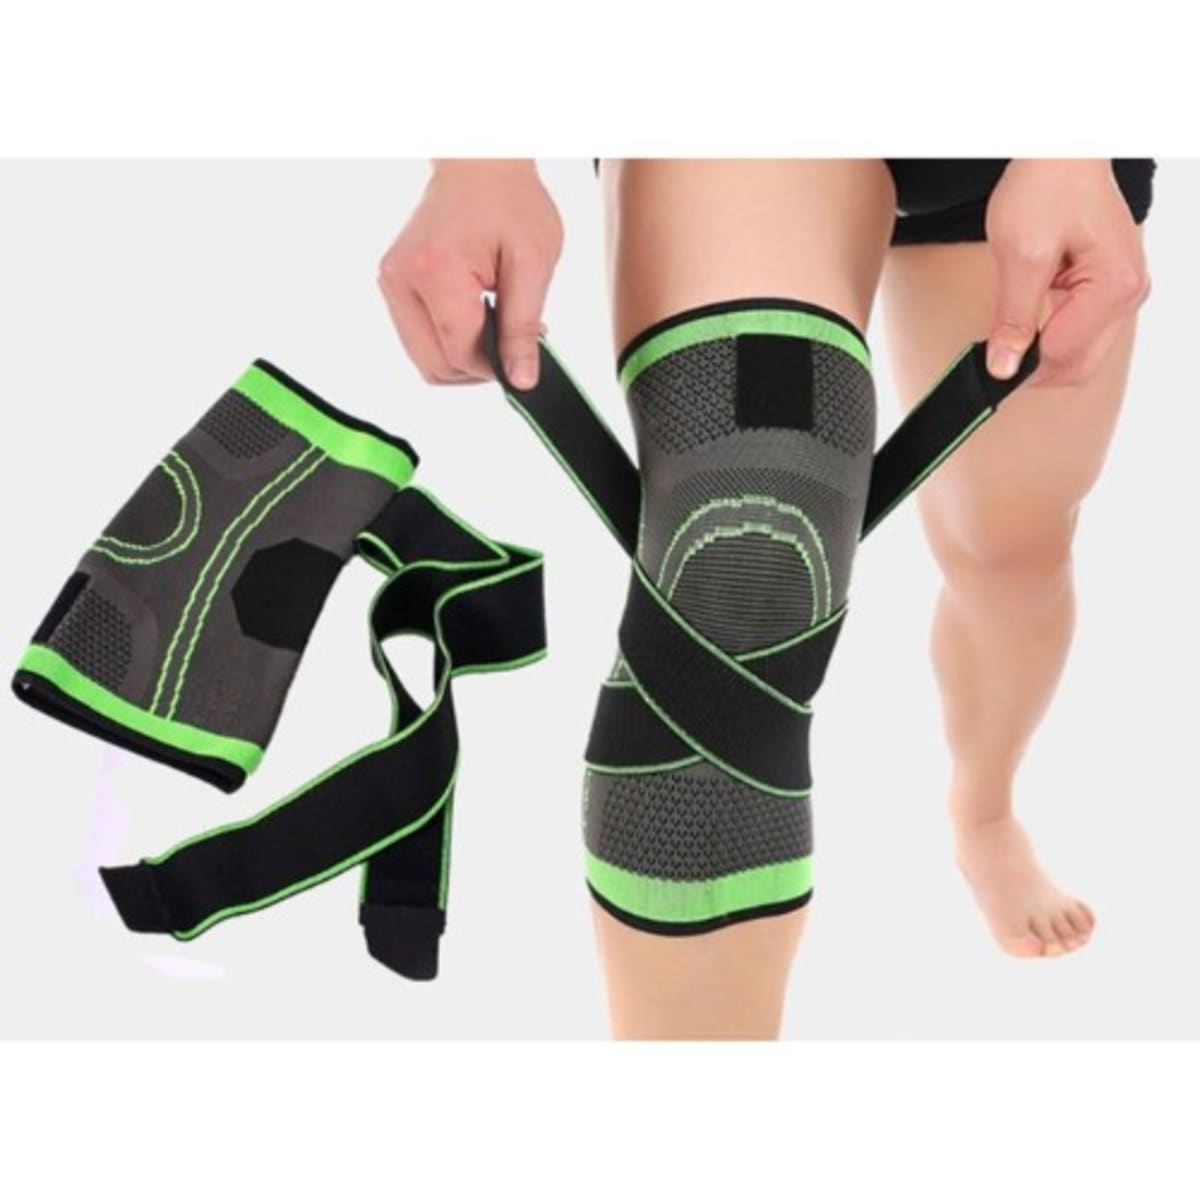 Adjustable Knee Support Knee & Sleeve Brace